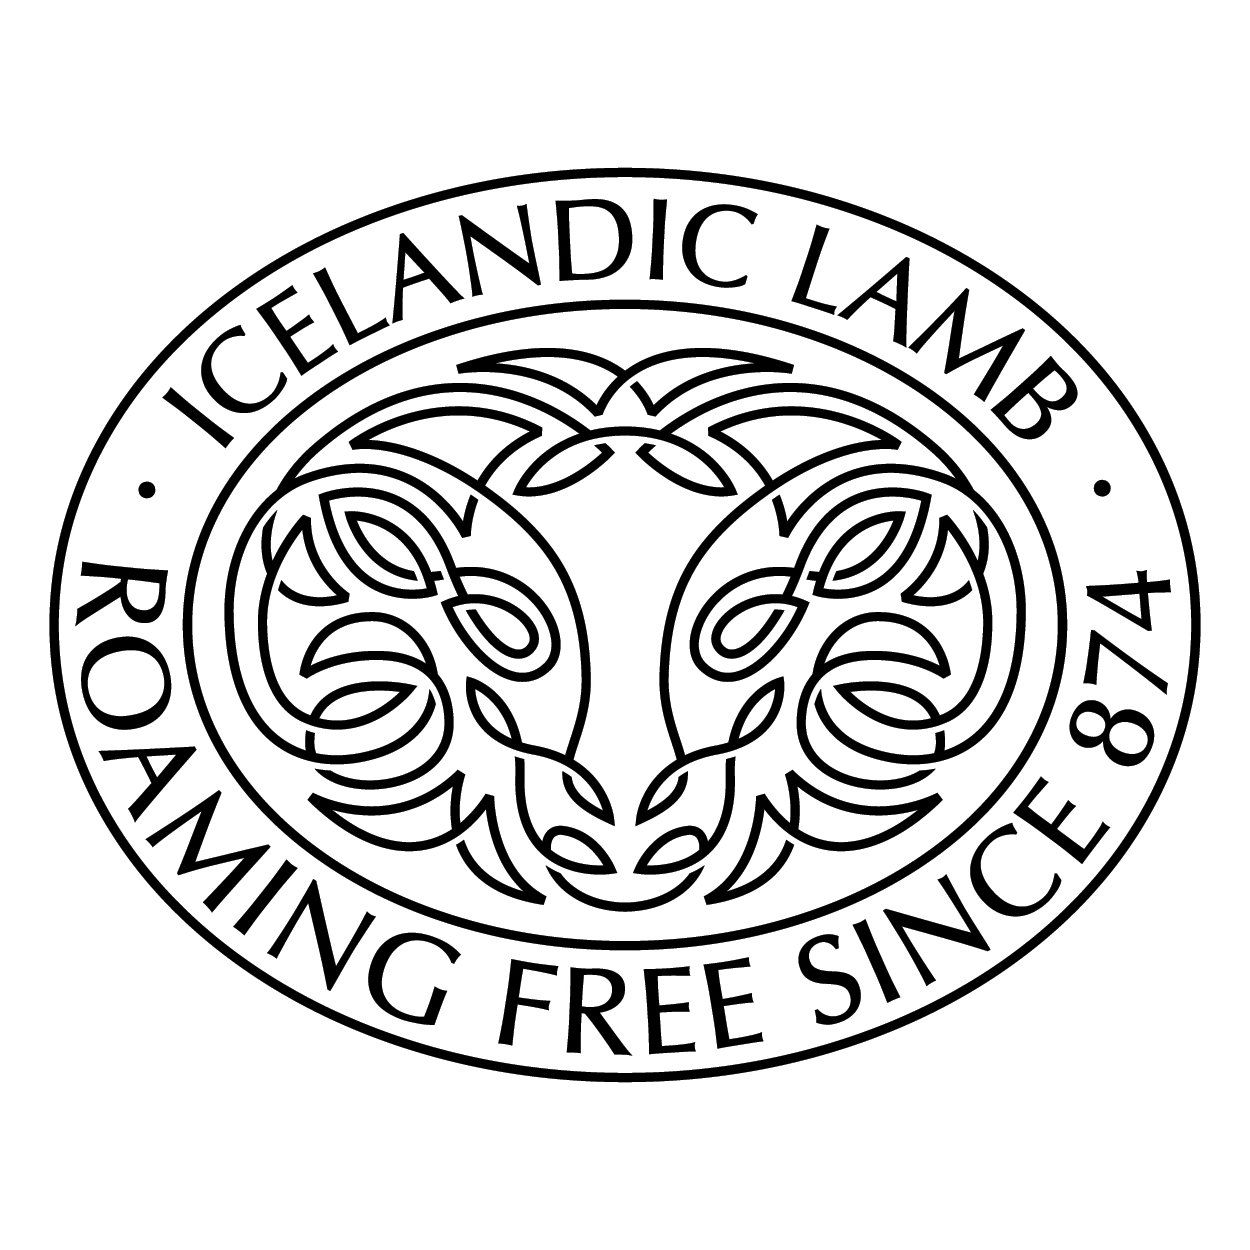 私たちはレイキャビクに本拠地を置くアイスランドラム協会の日本支部です。 「最も古く、最も純粋な羊」であるアイスランド産ラムの魅力を 日本国内に広く正確に届けるために活動しています。 アイスランドラムを常に提供しているお店とパートナーシップを結び、